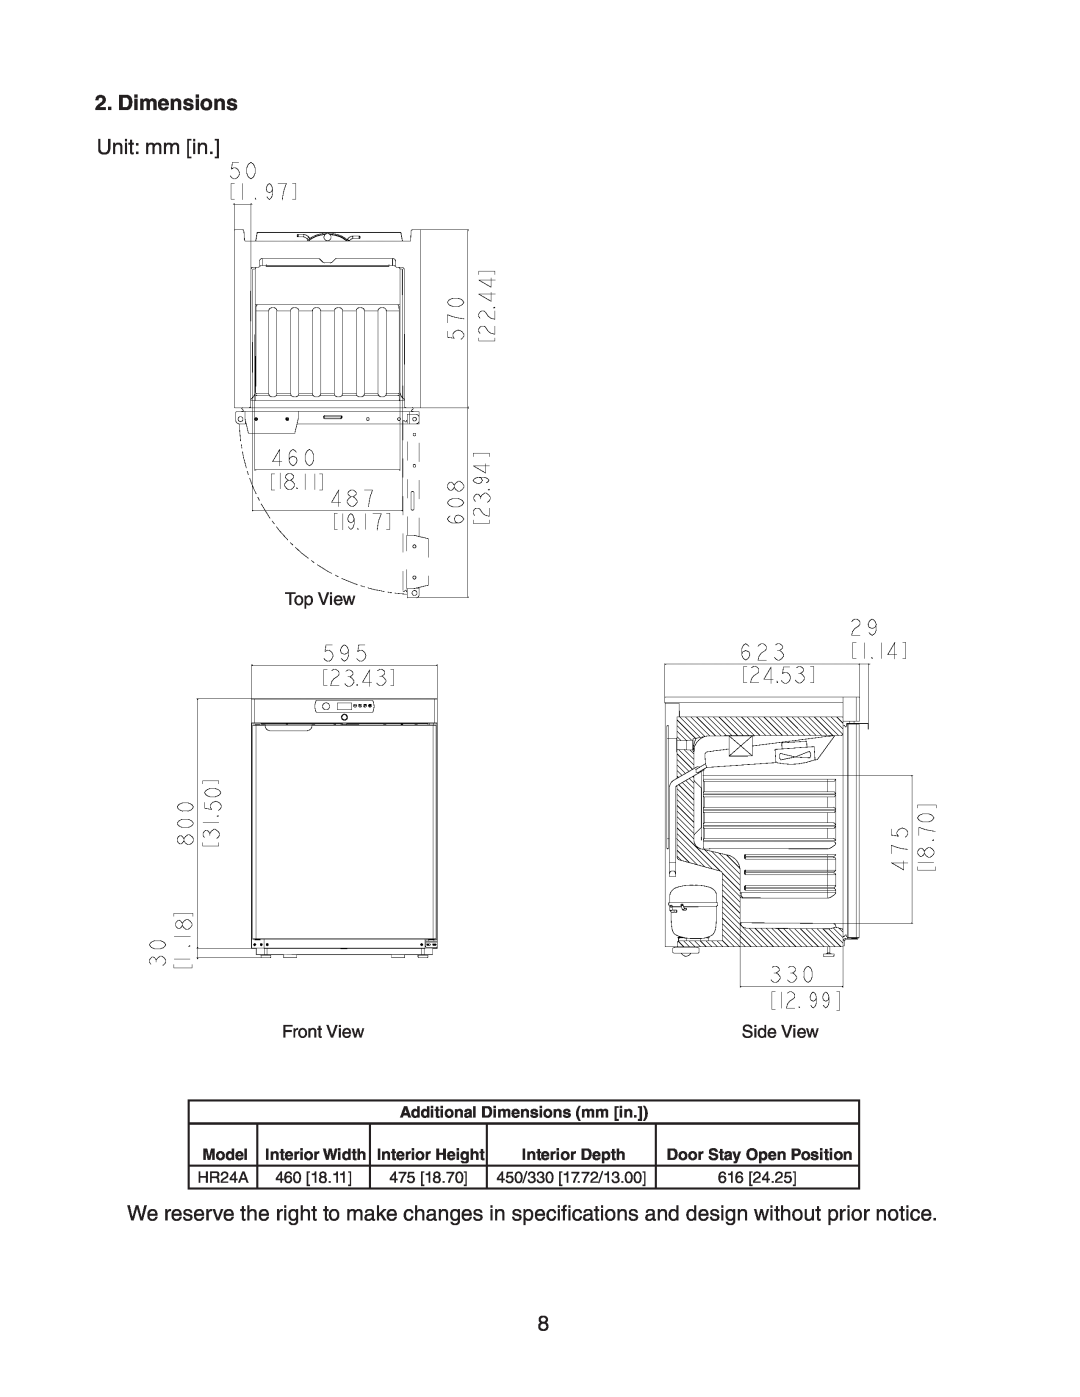 Hoshizaki HR24A service manual Dimensions, Unit mm in 